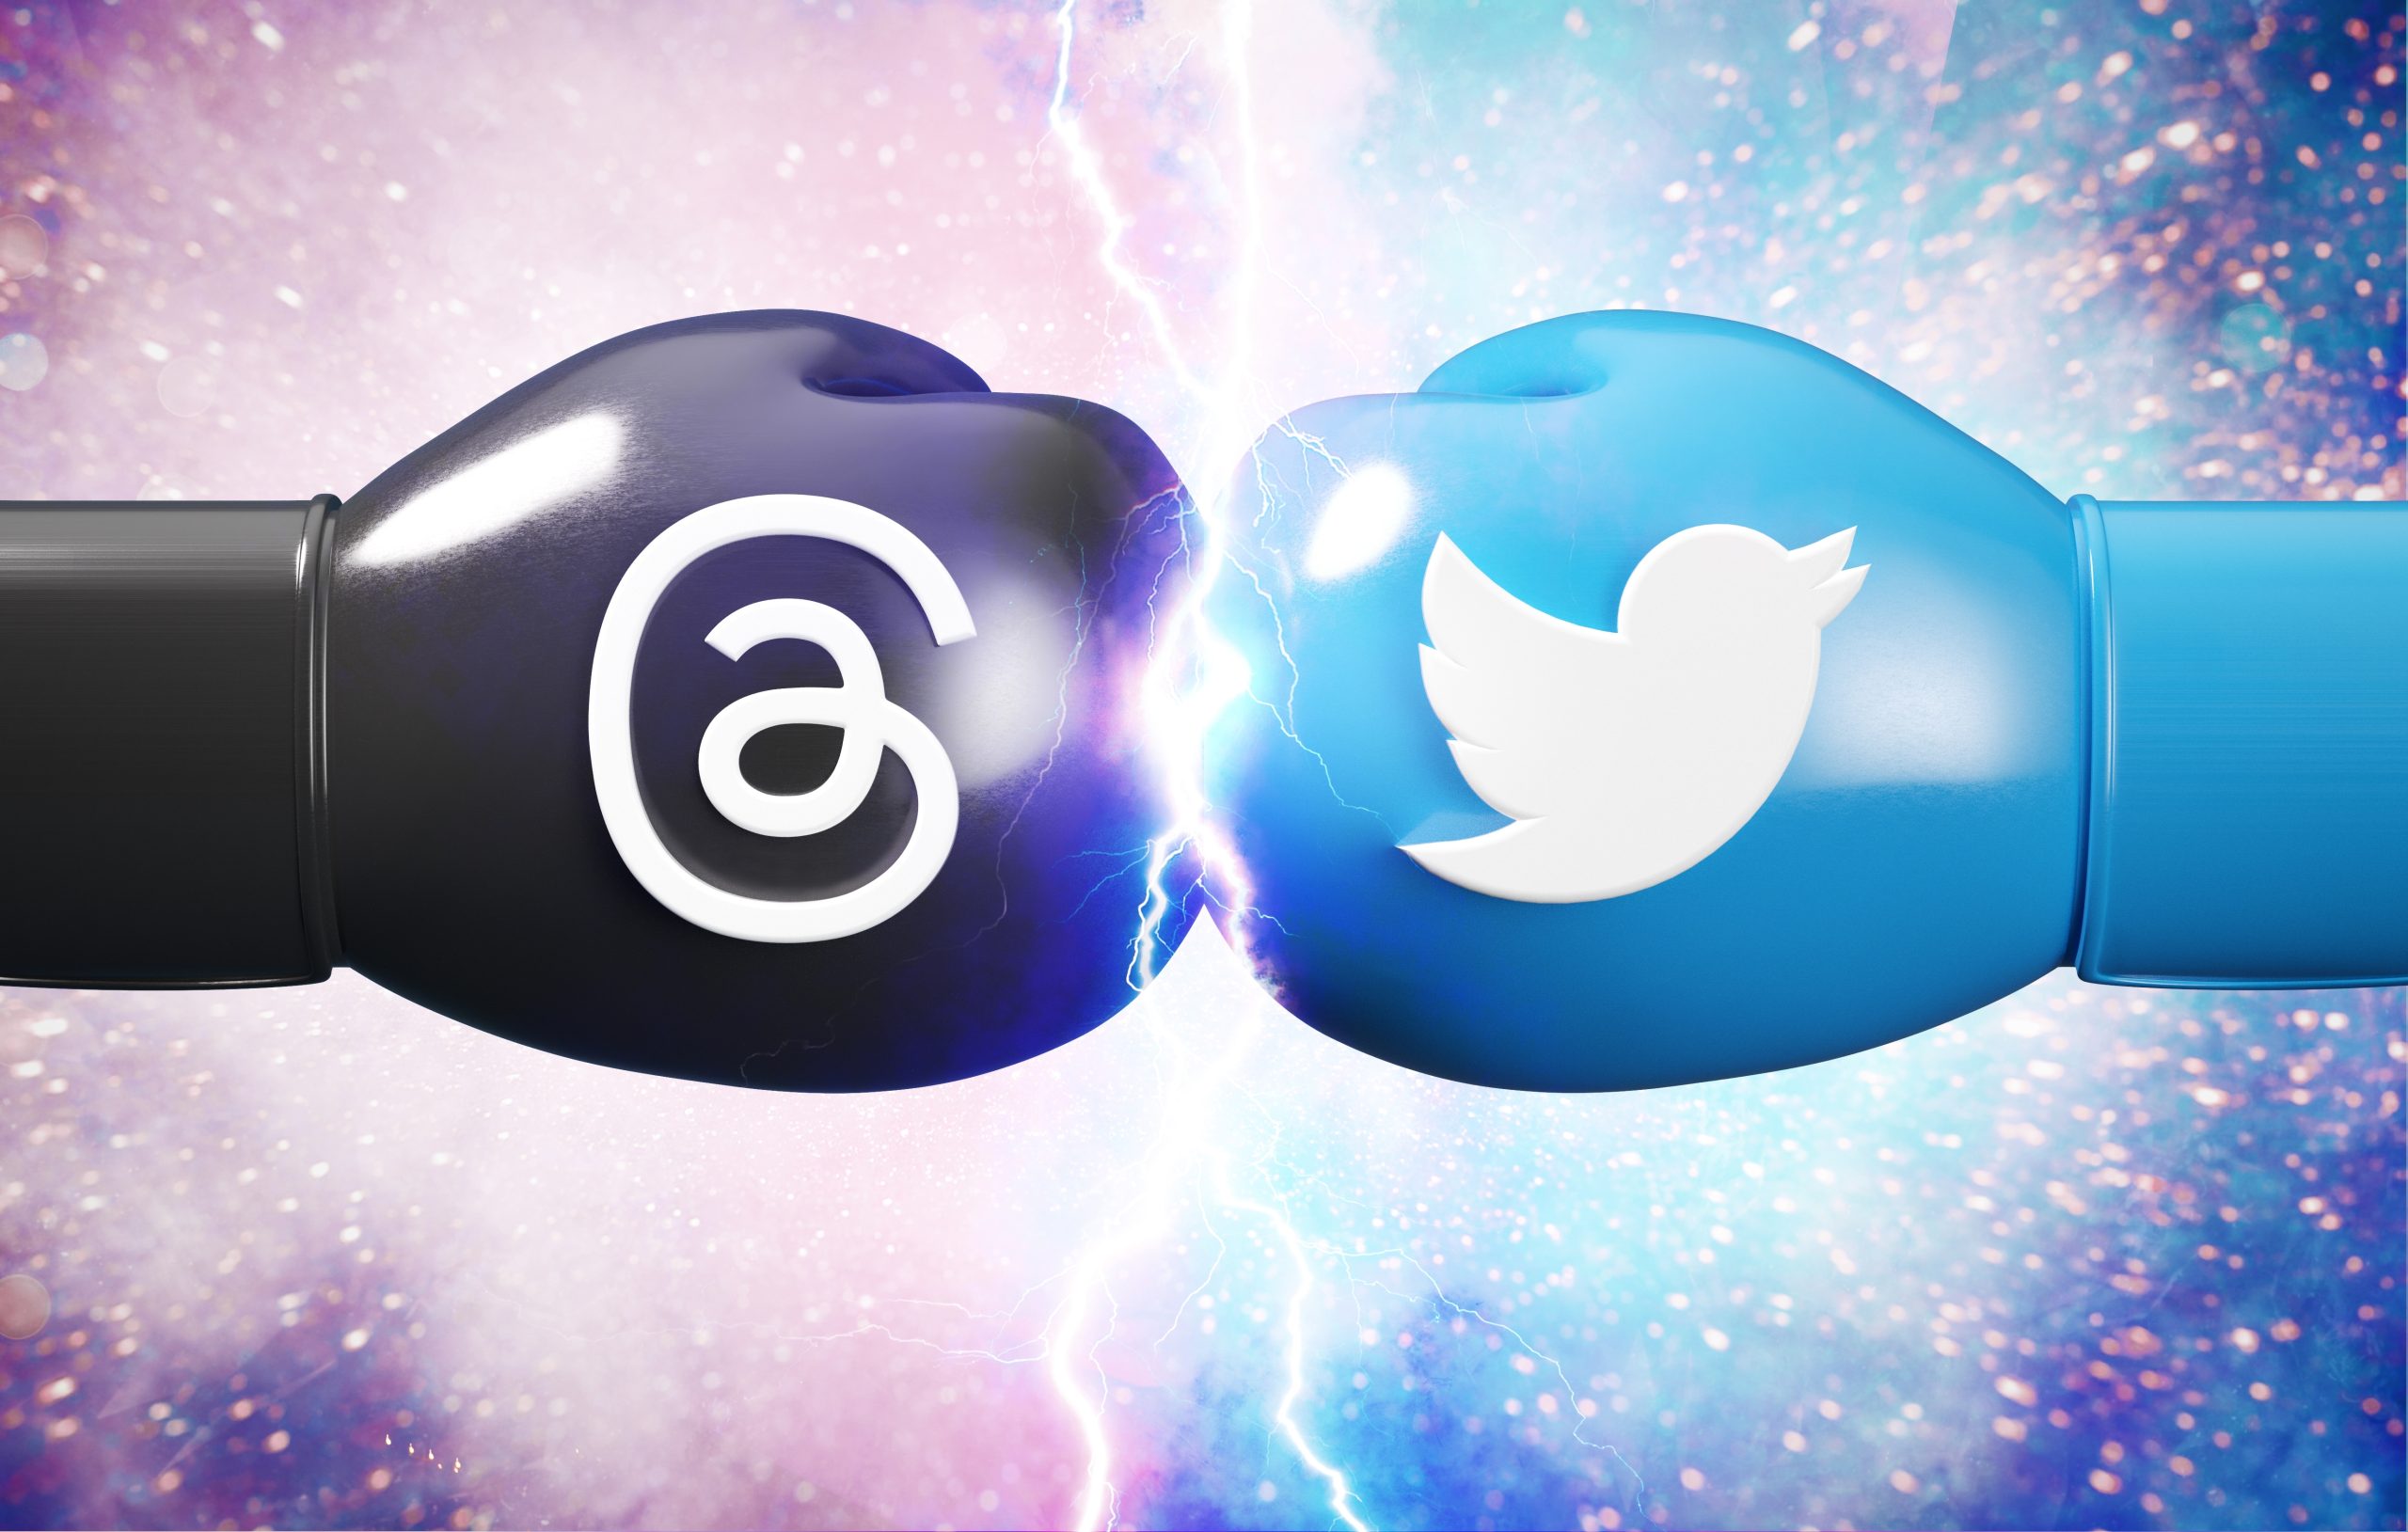 Ilustração mostra duas luvas de boxe - uma com o símbolo do Threads, outra com o símbolo do Twitter - simbolizando confronto entre as duas redes sociais